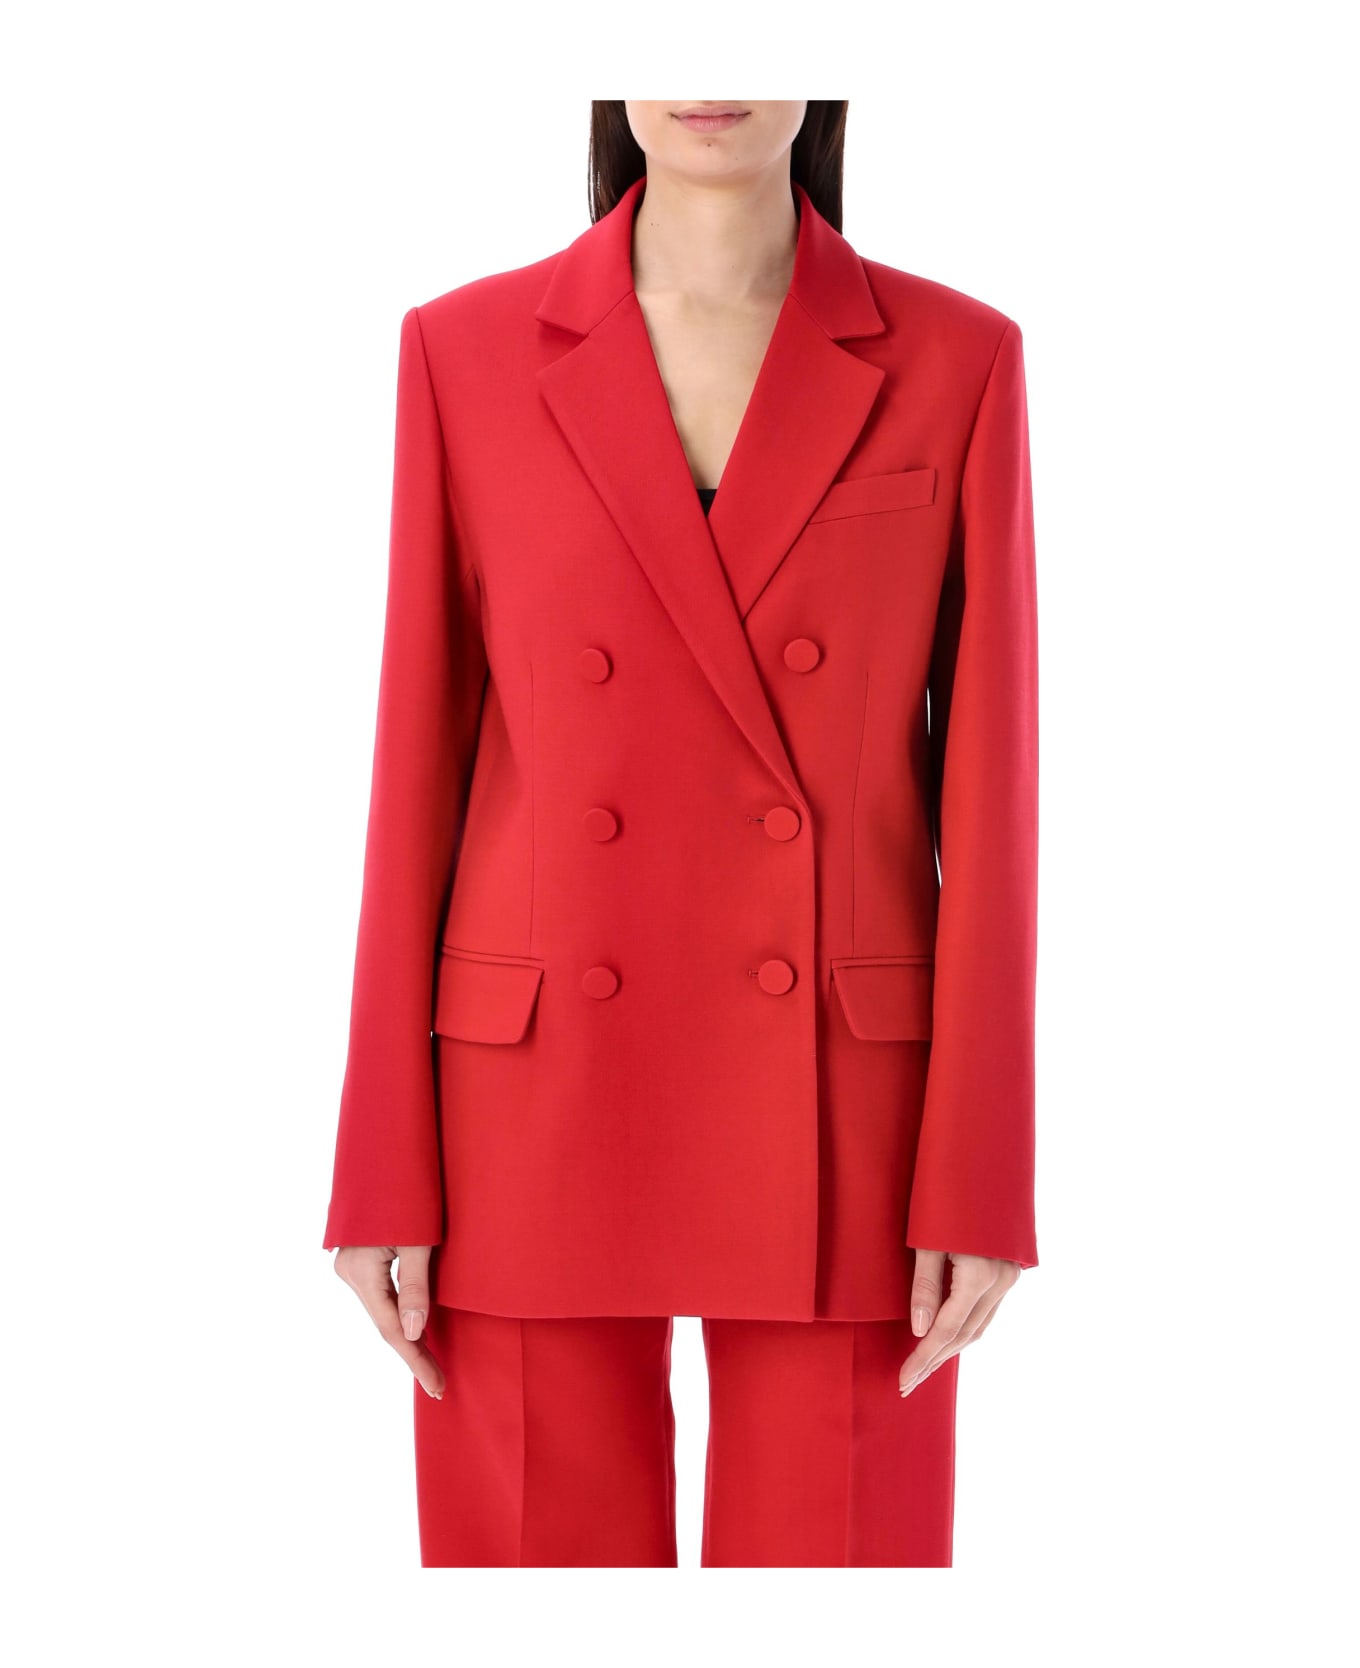 Valentino Garavani Crepe Couture Blazer - RED